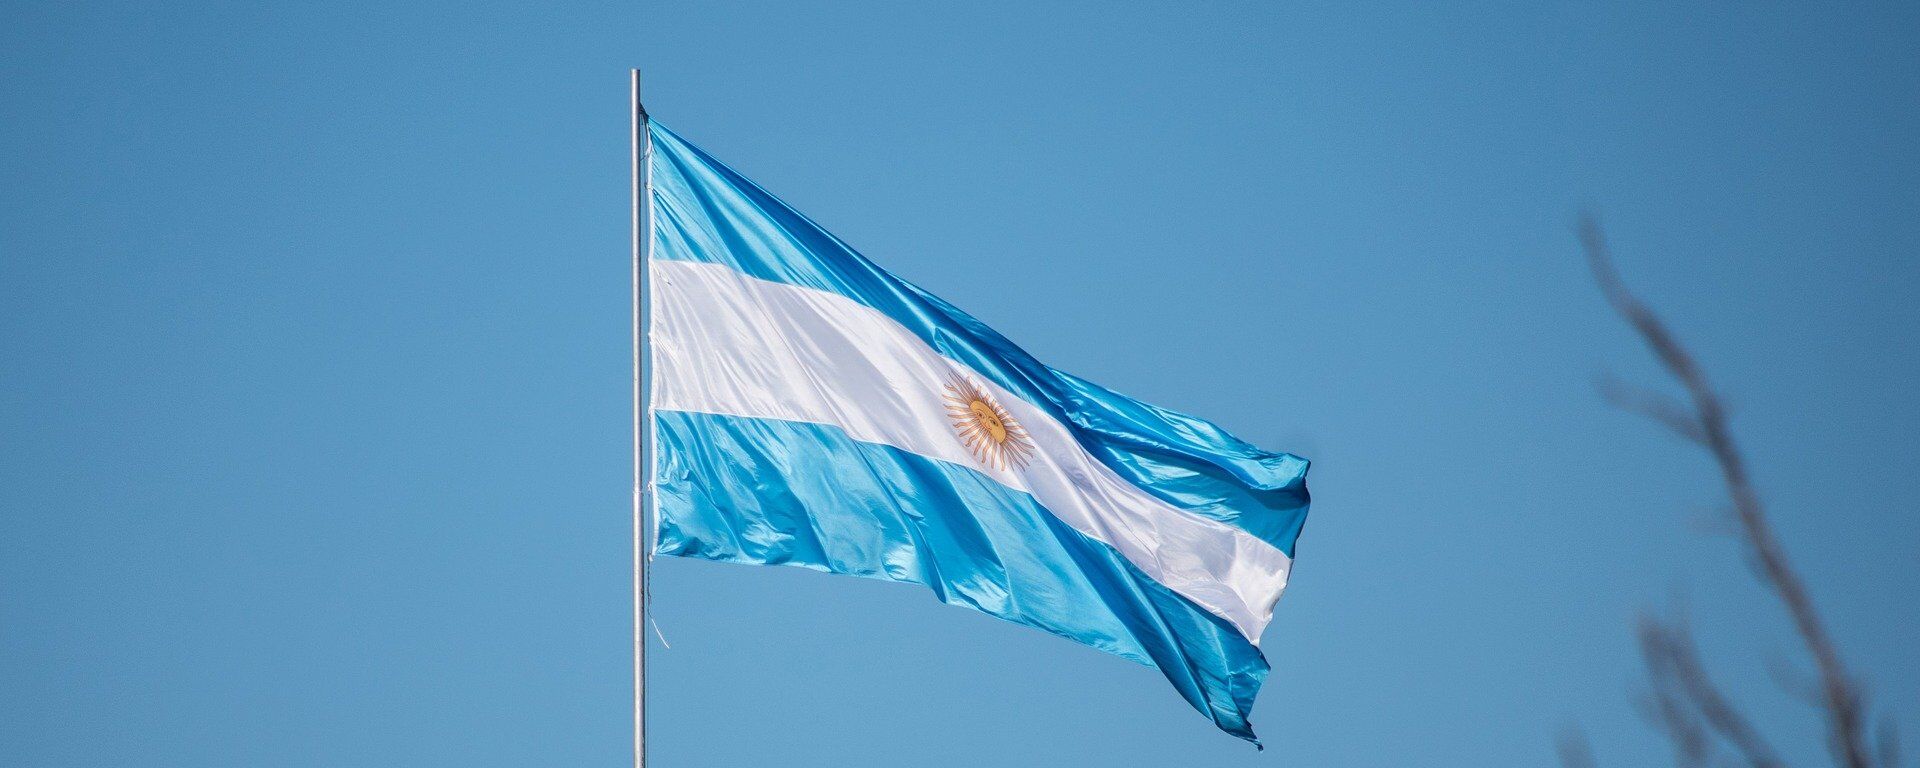 La bandera de Argentina - Sputnik Mundo, 1920, 15.06.2021